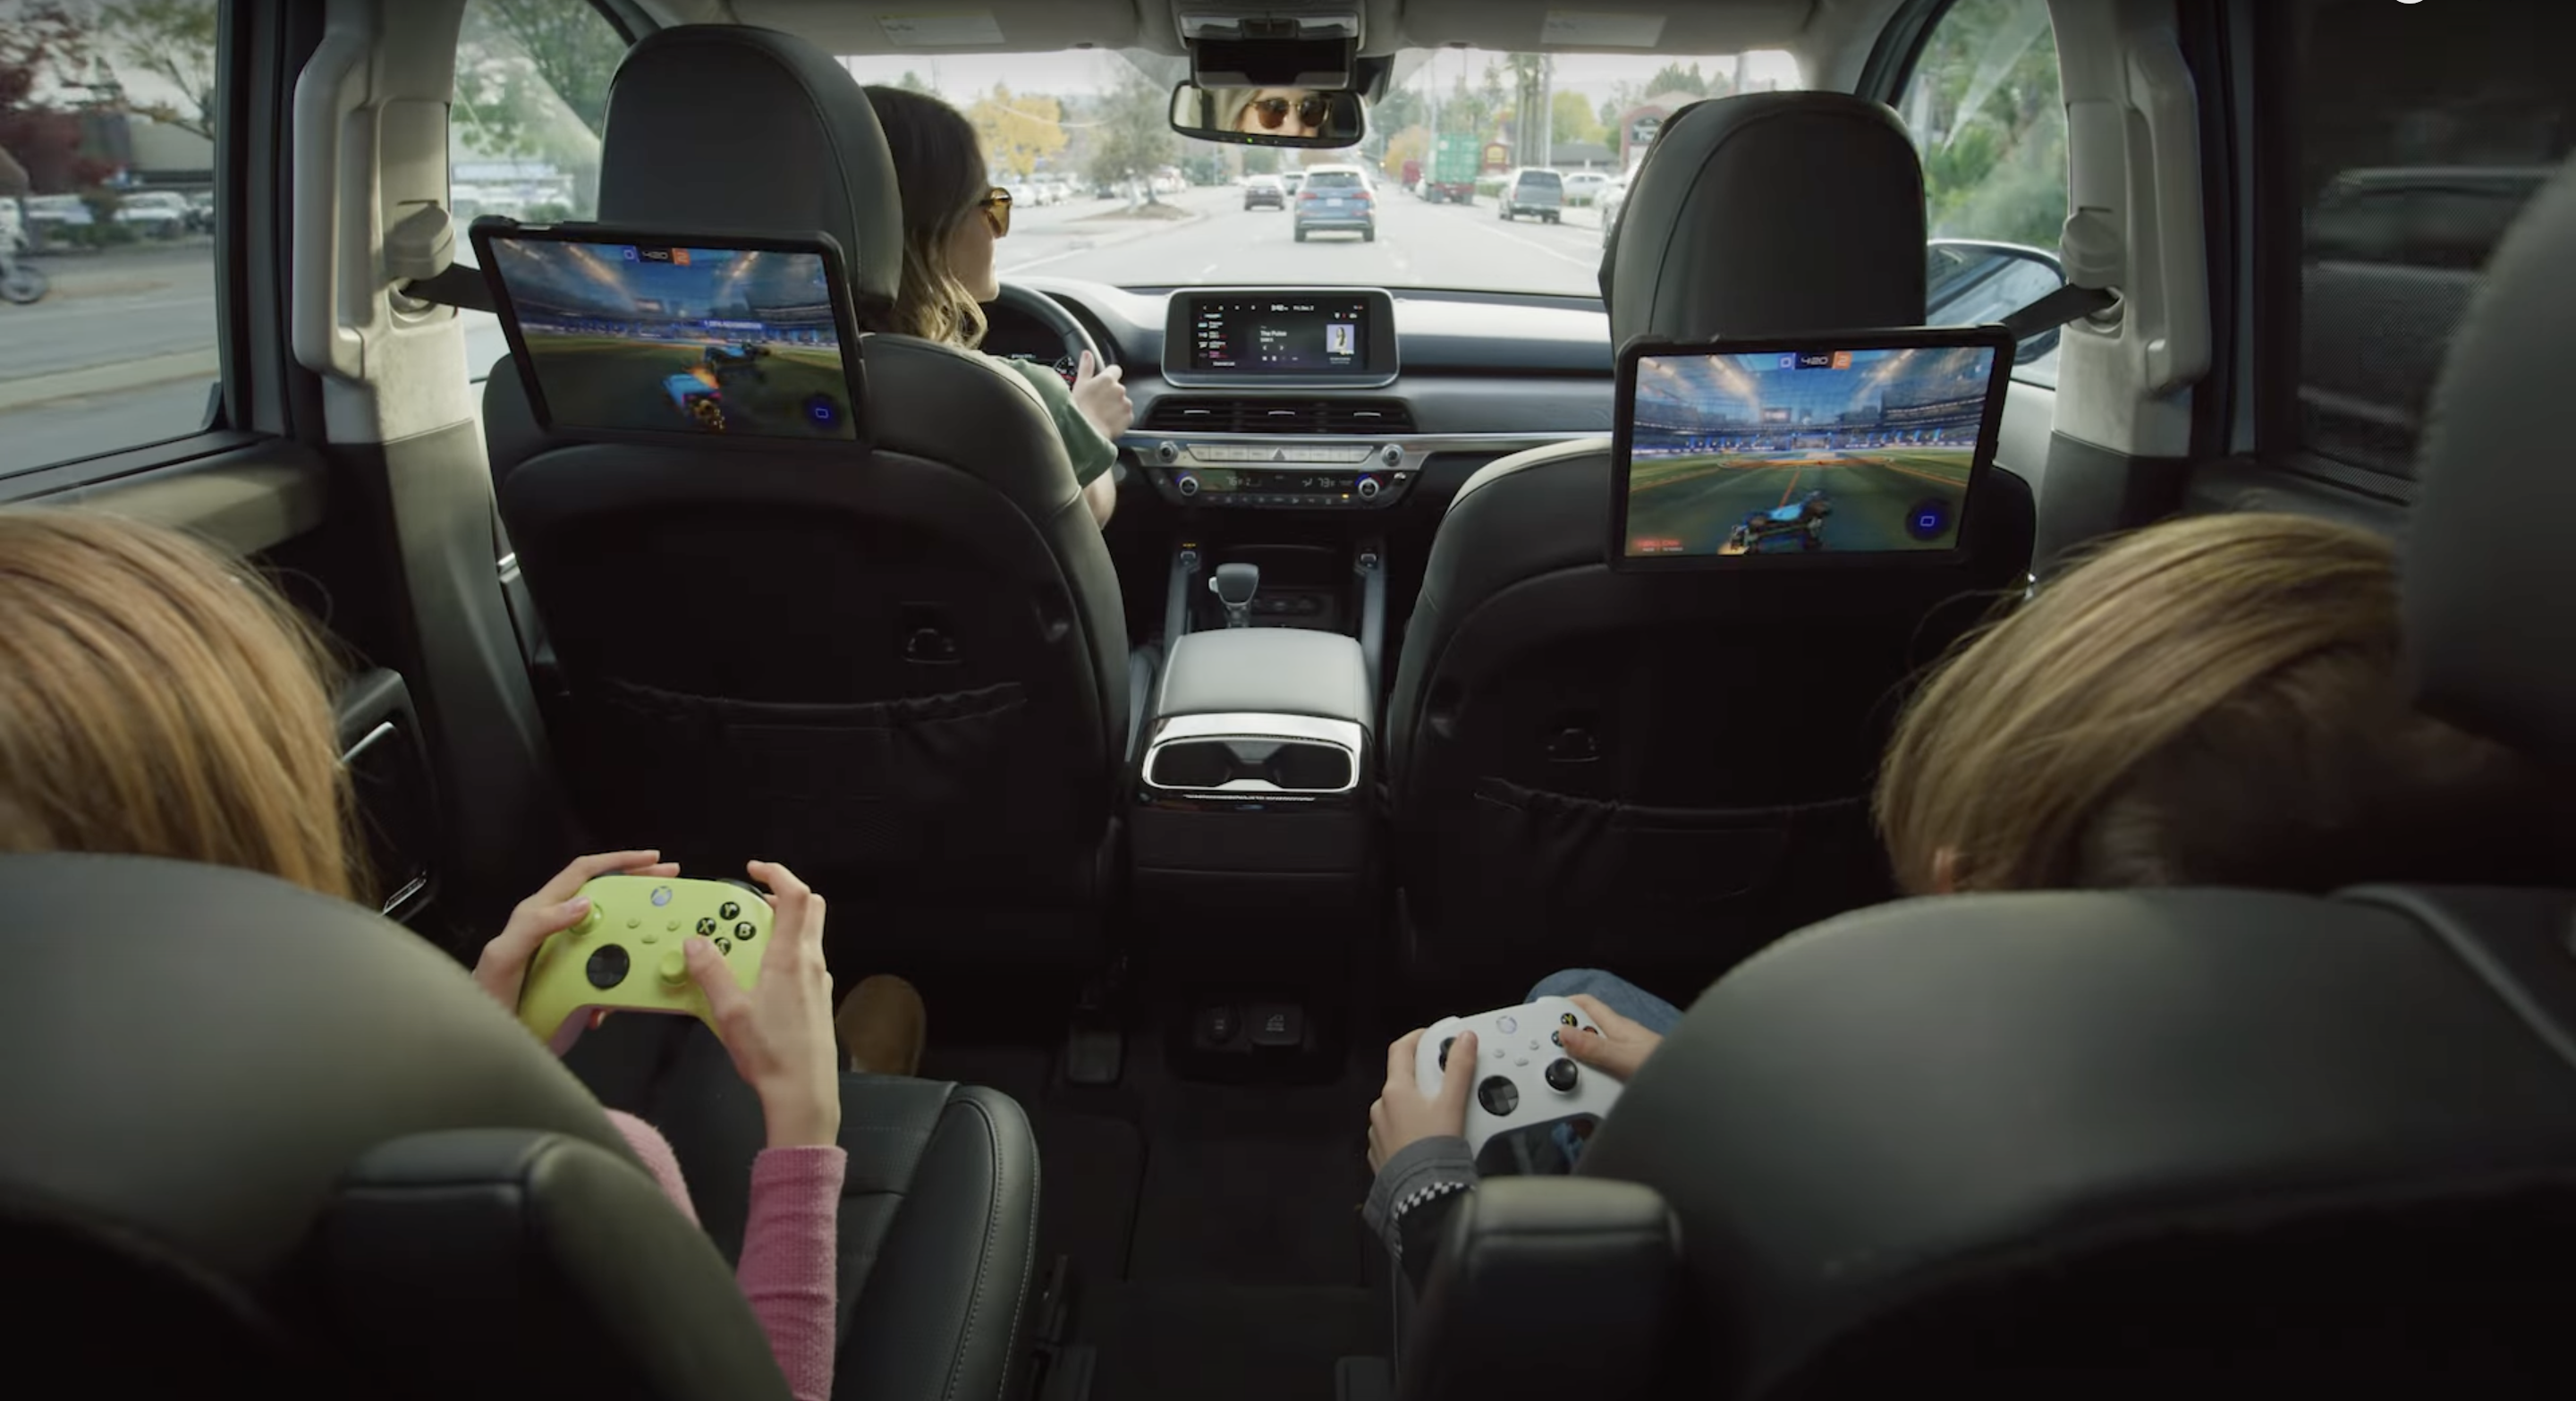 Le auto Polestar, BYD, Hyundai, Kia e Genesis con Android Automotive a bordo otterranno il supporto per il servizio di cloud gaming Nvidia GeForce Now